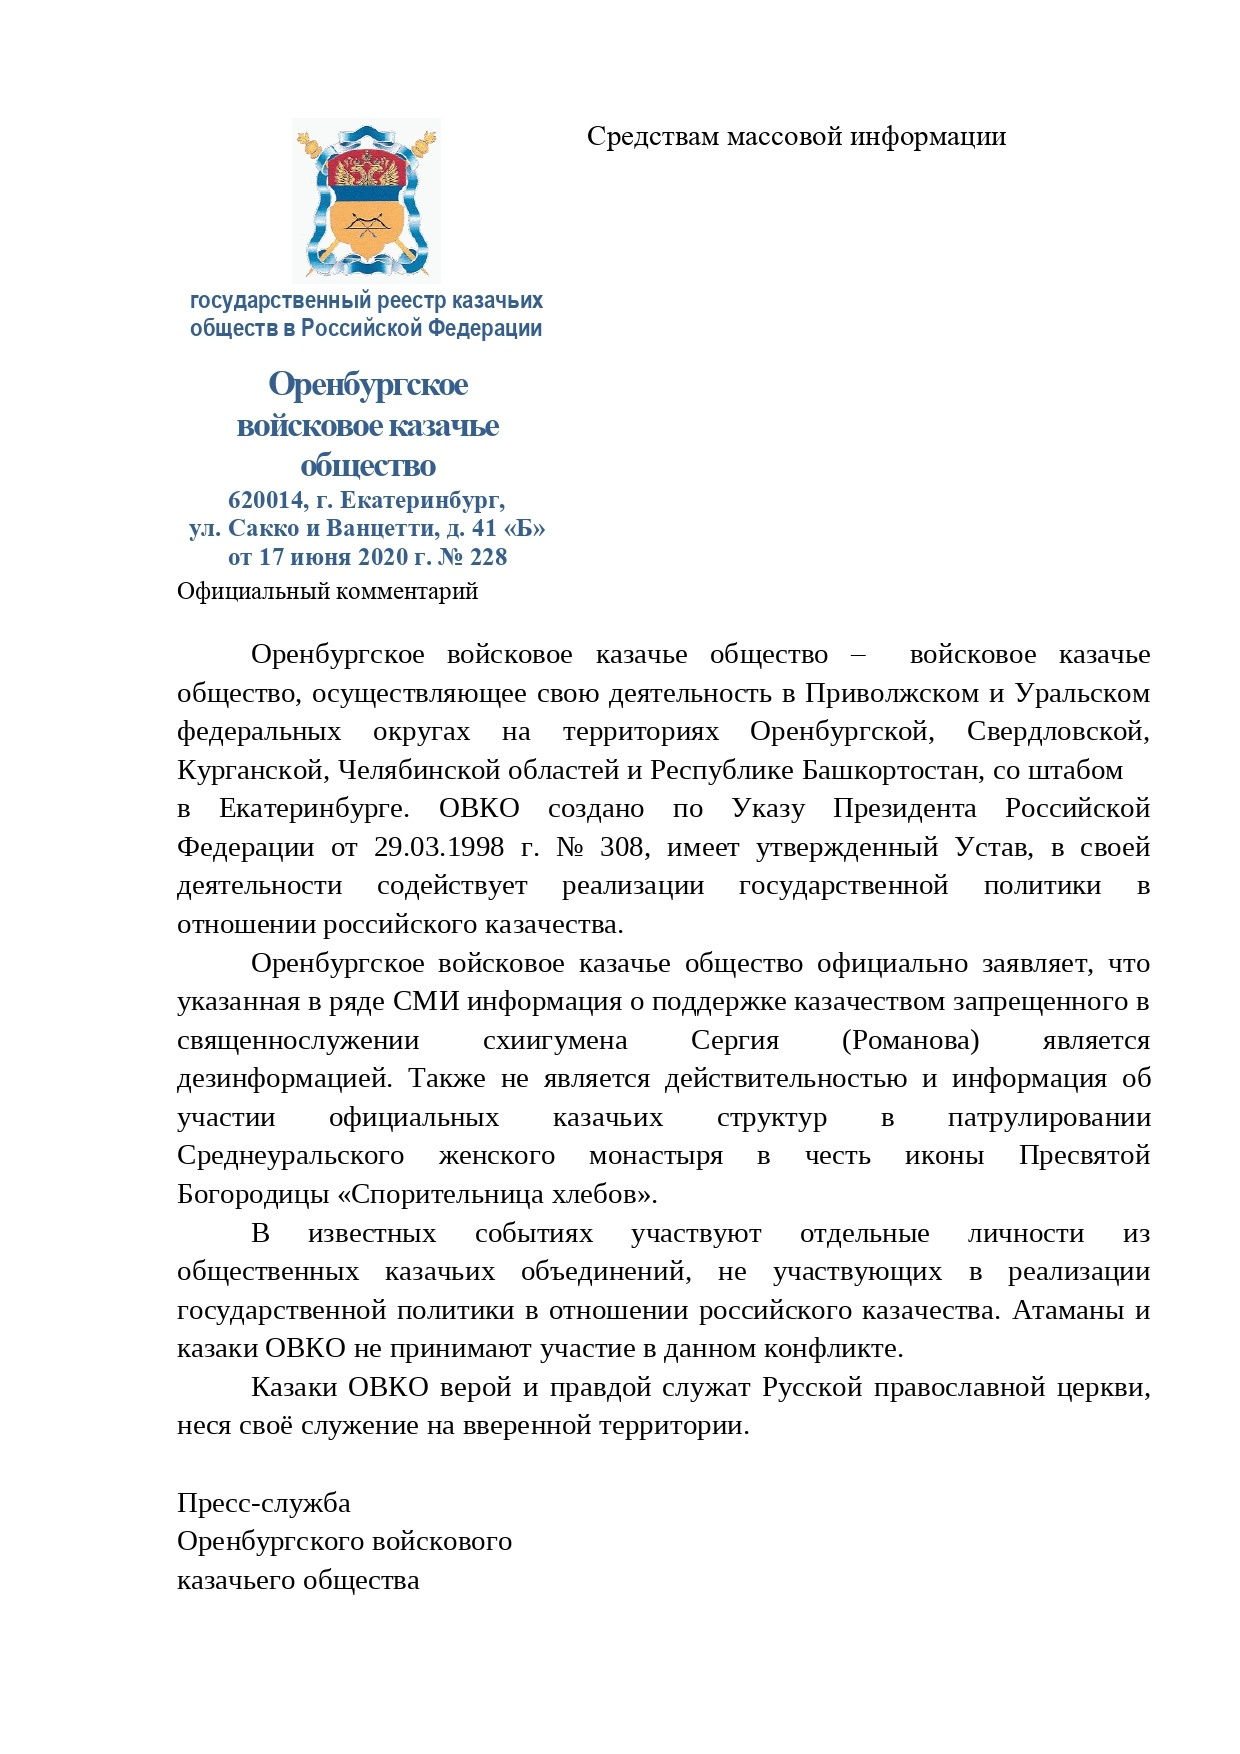 Заявление опубликовано на официальном сайте Оренбургского казачьего общества